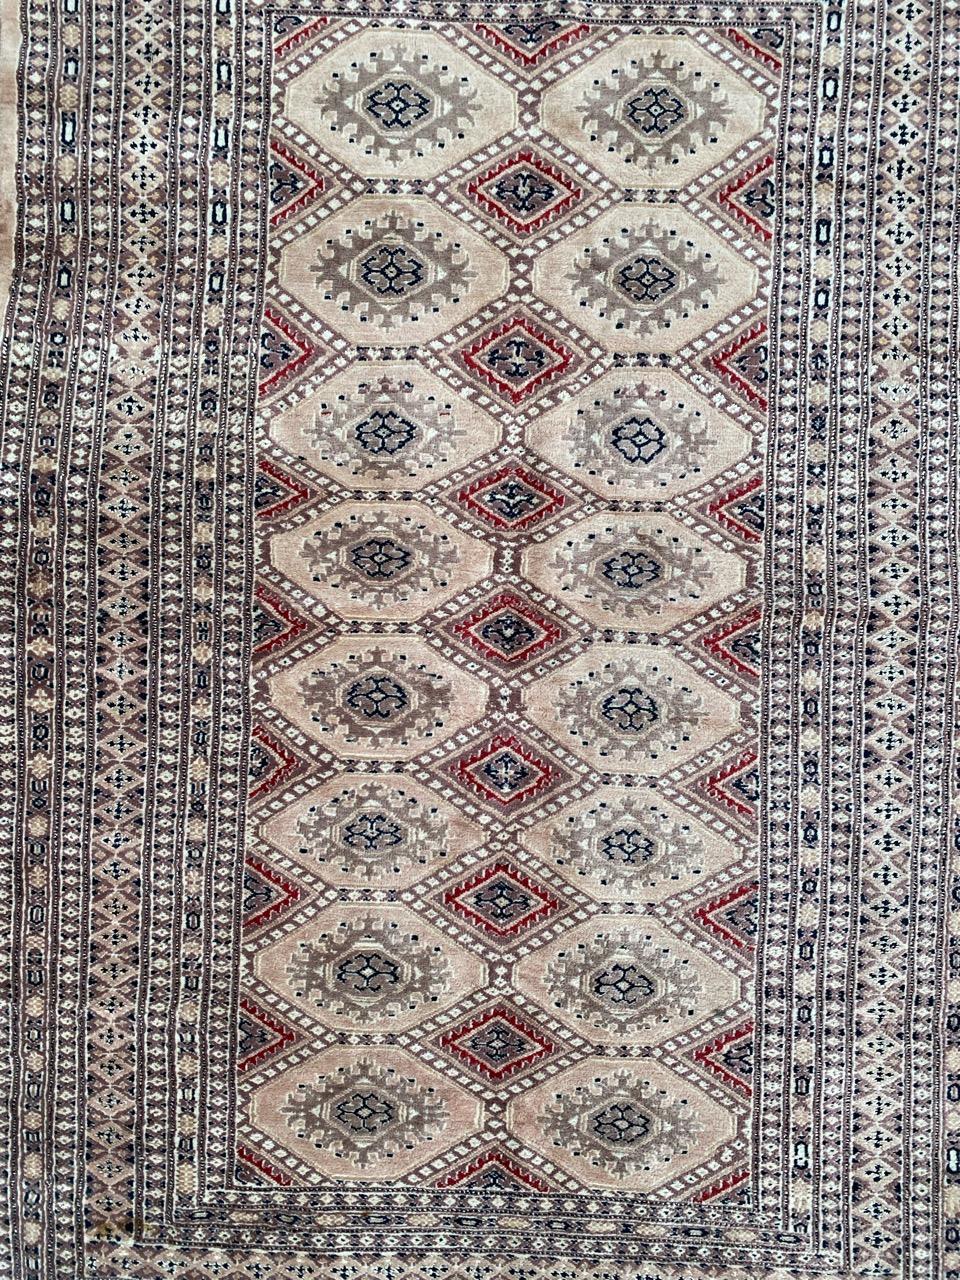 Schöner Teppich aus der Mitte des Jahrhunderts mit schönem geometrischem Muster und schönen Farben, komplett handgeknüpft mit Wollsamt auf Baumwollbasis.

✨✨✨
